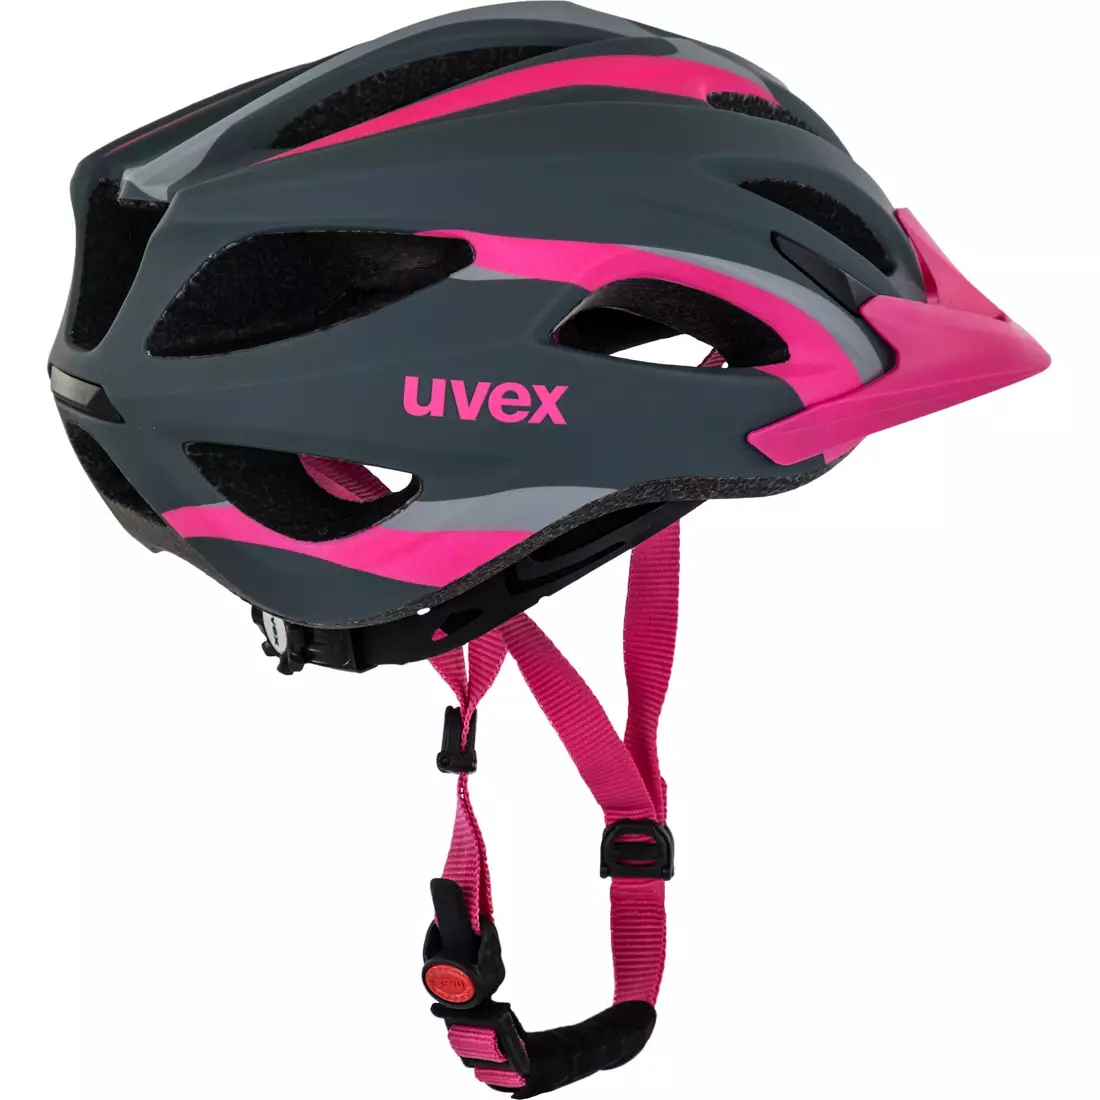 Cyklistická přilba UVEX VIVA 2 410104mat18 šedá růžová mat